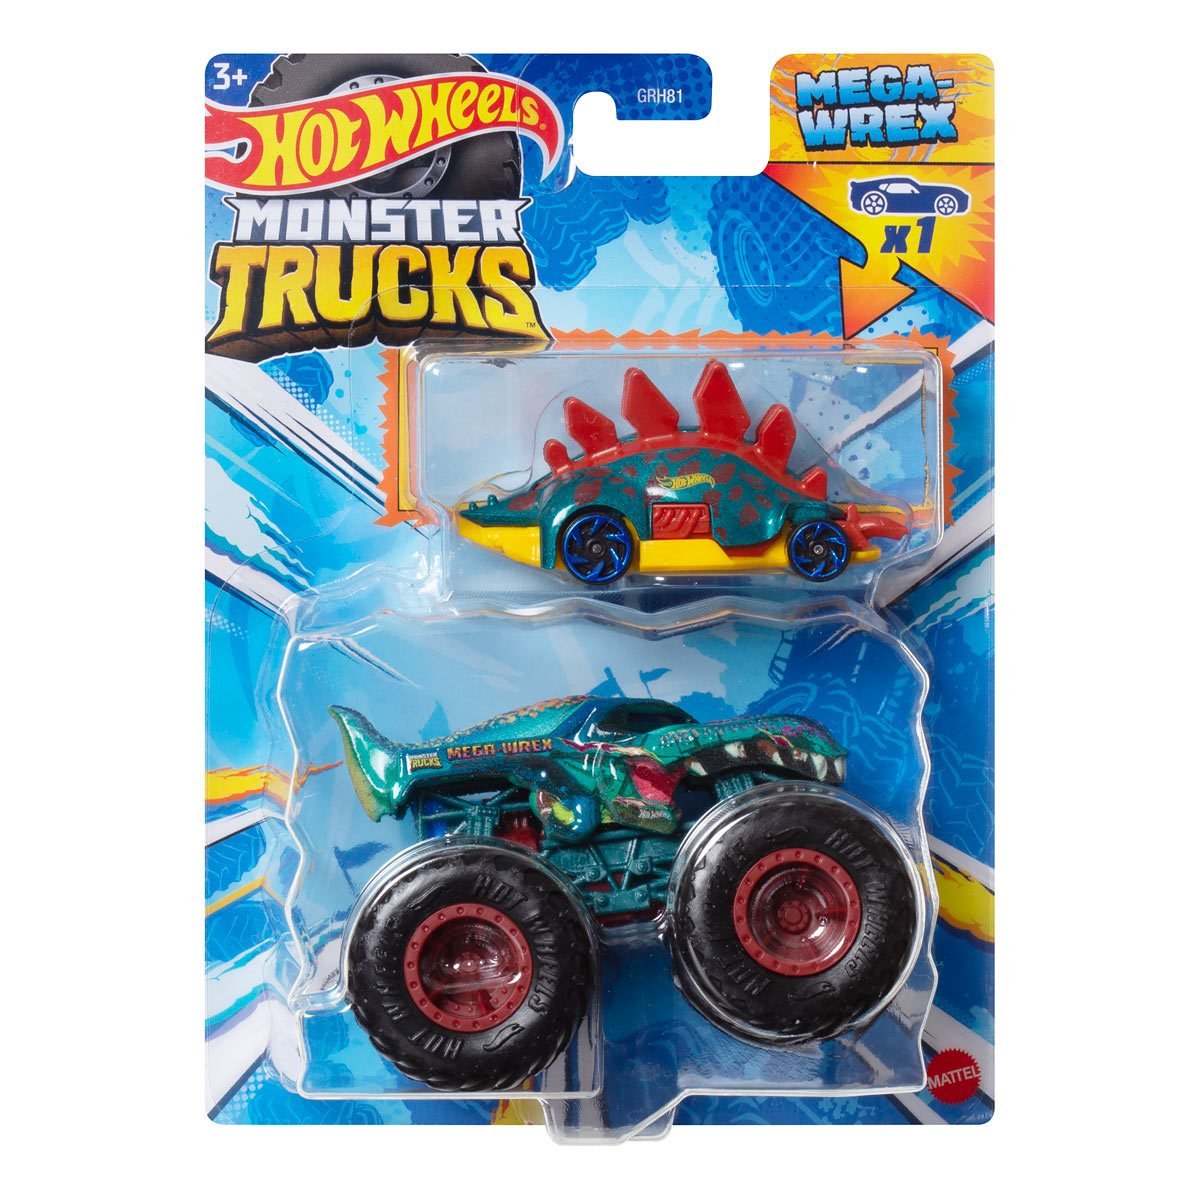 Hot Wheels Monster Trucks Bone Shaker, Black/Red Toy